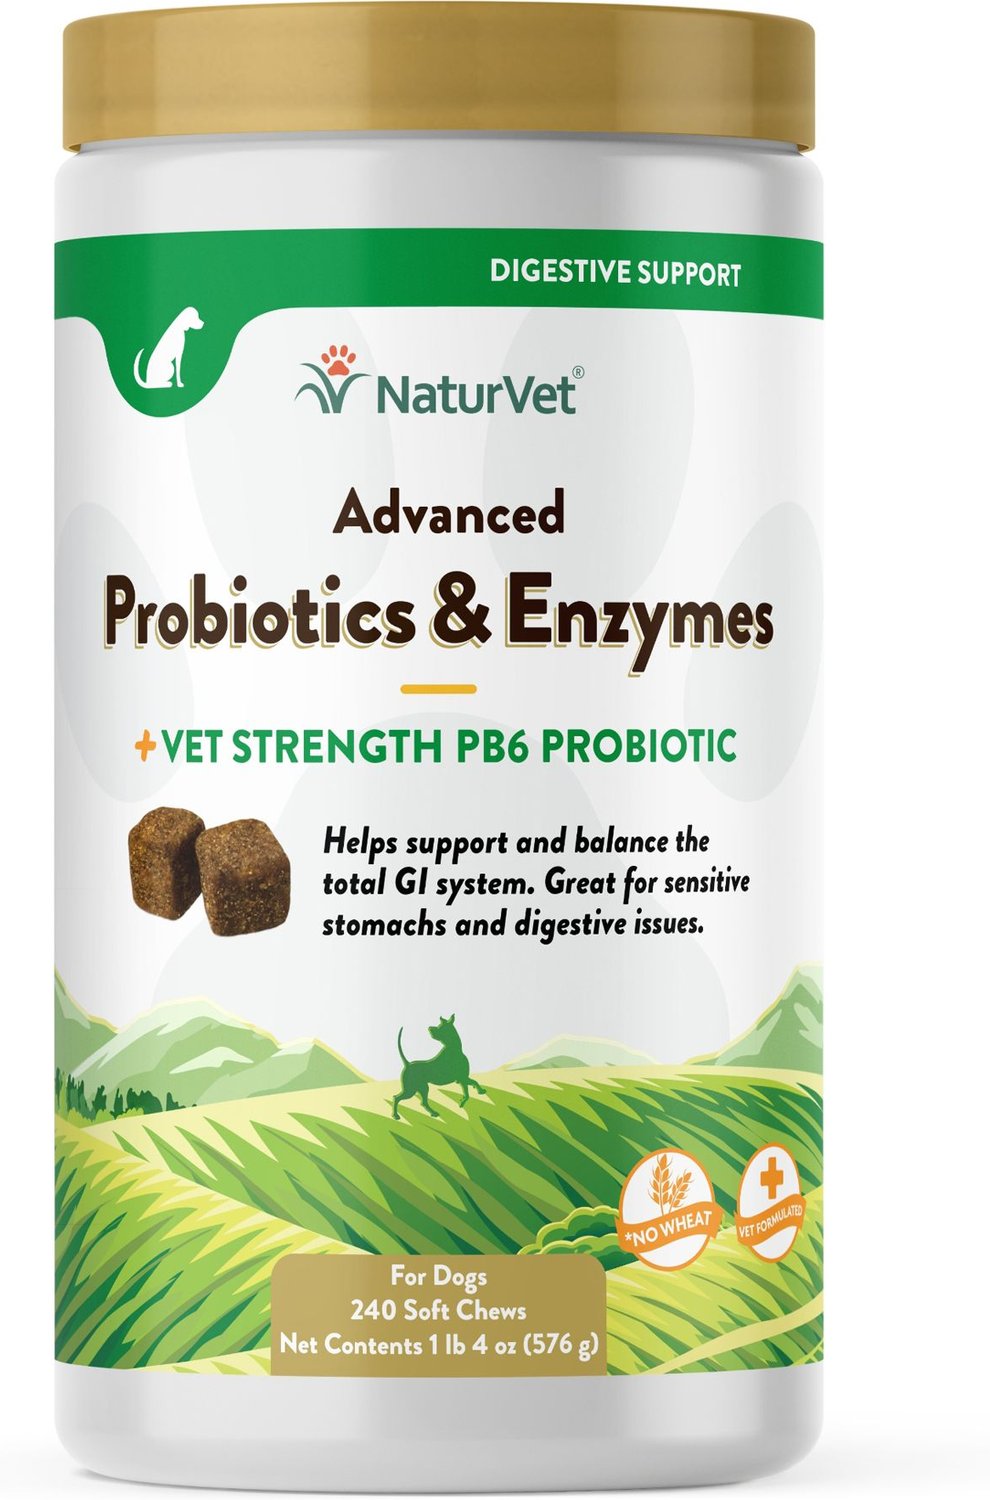 NaturVet Advanced Probiotics & Enzymes Plus